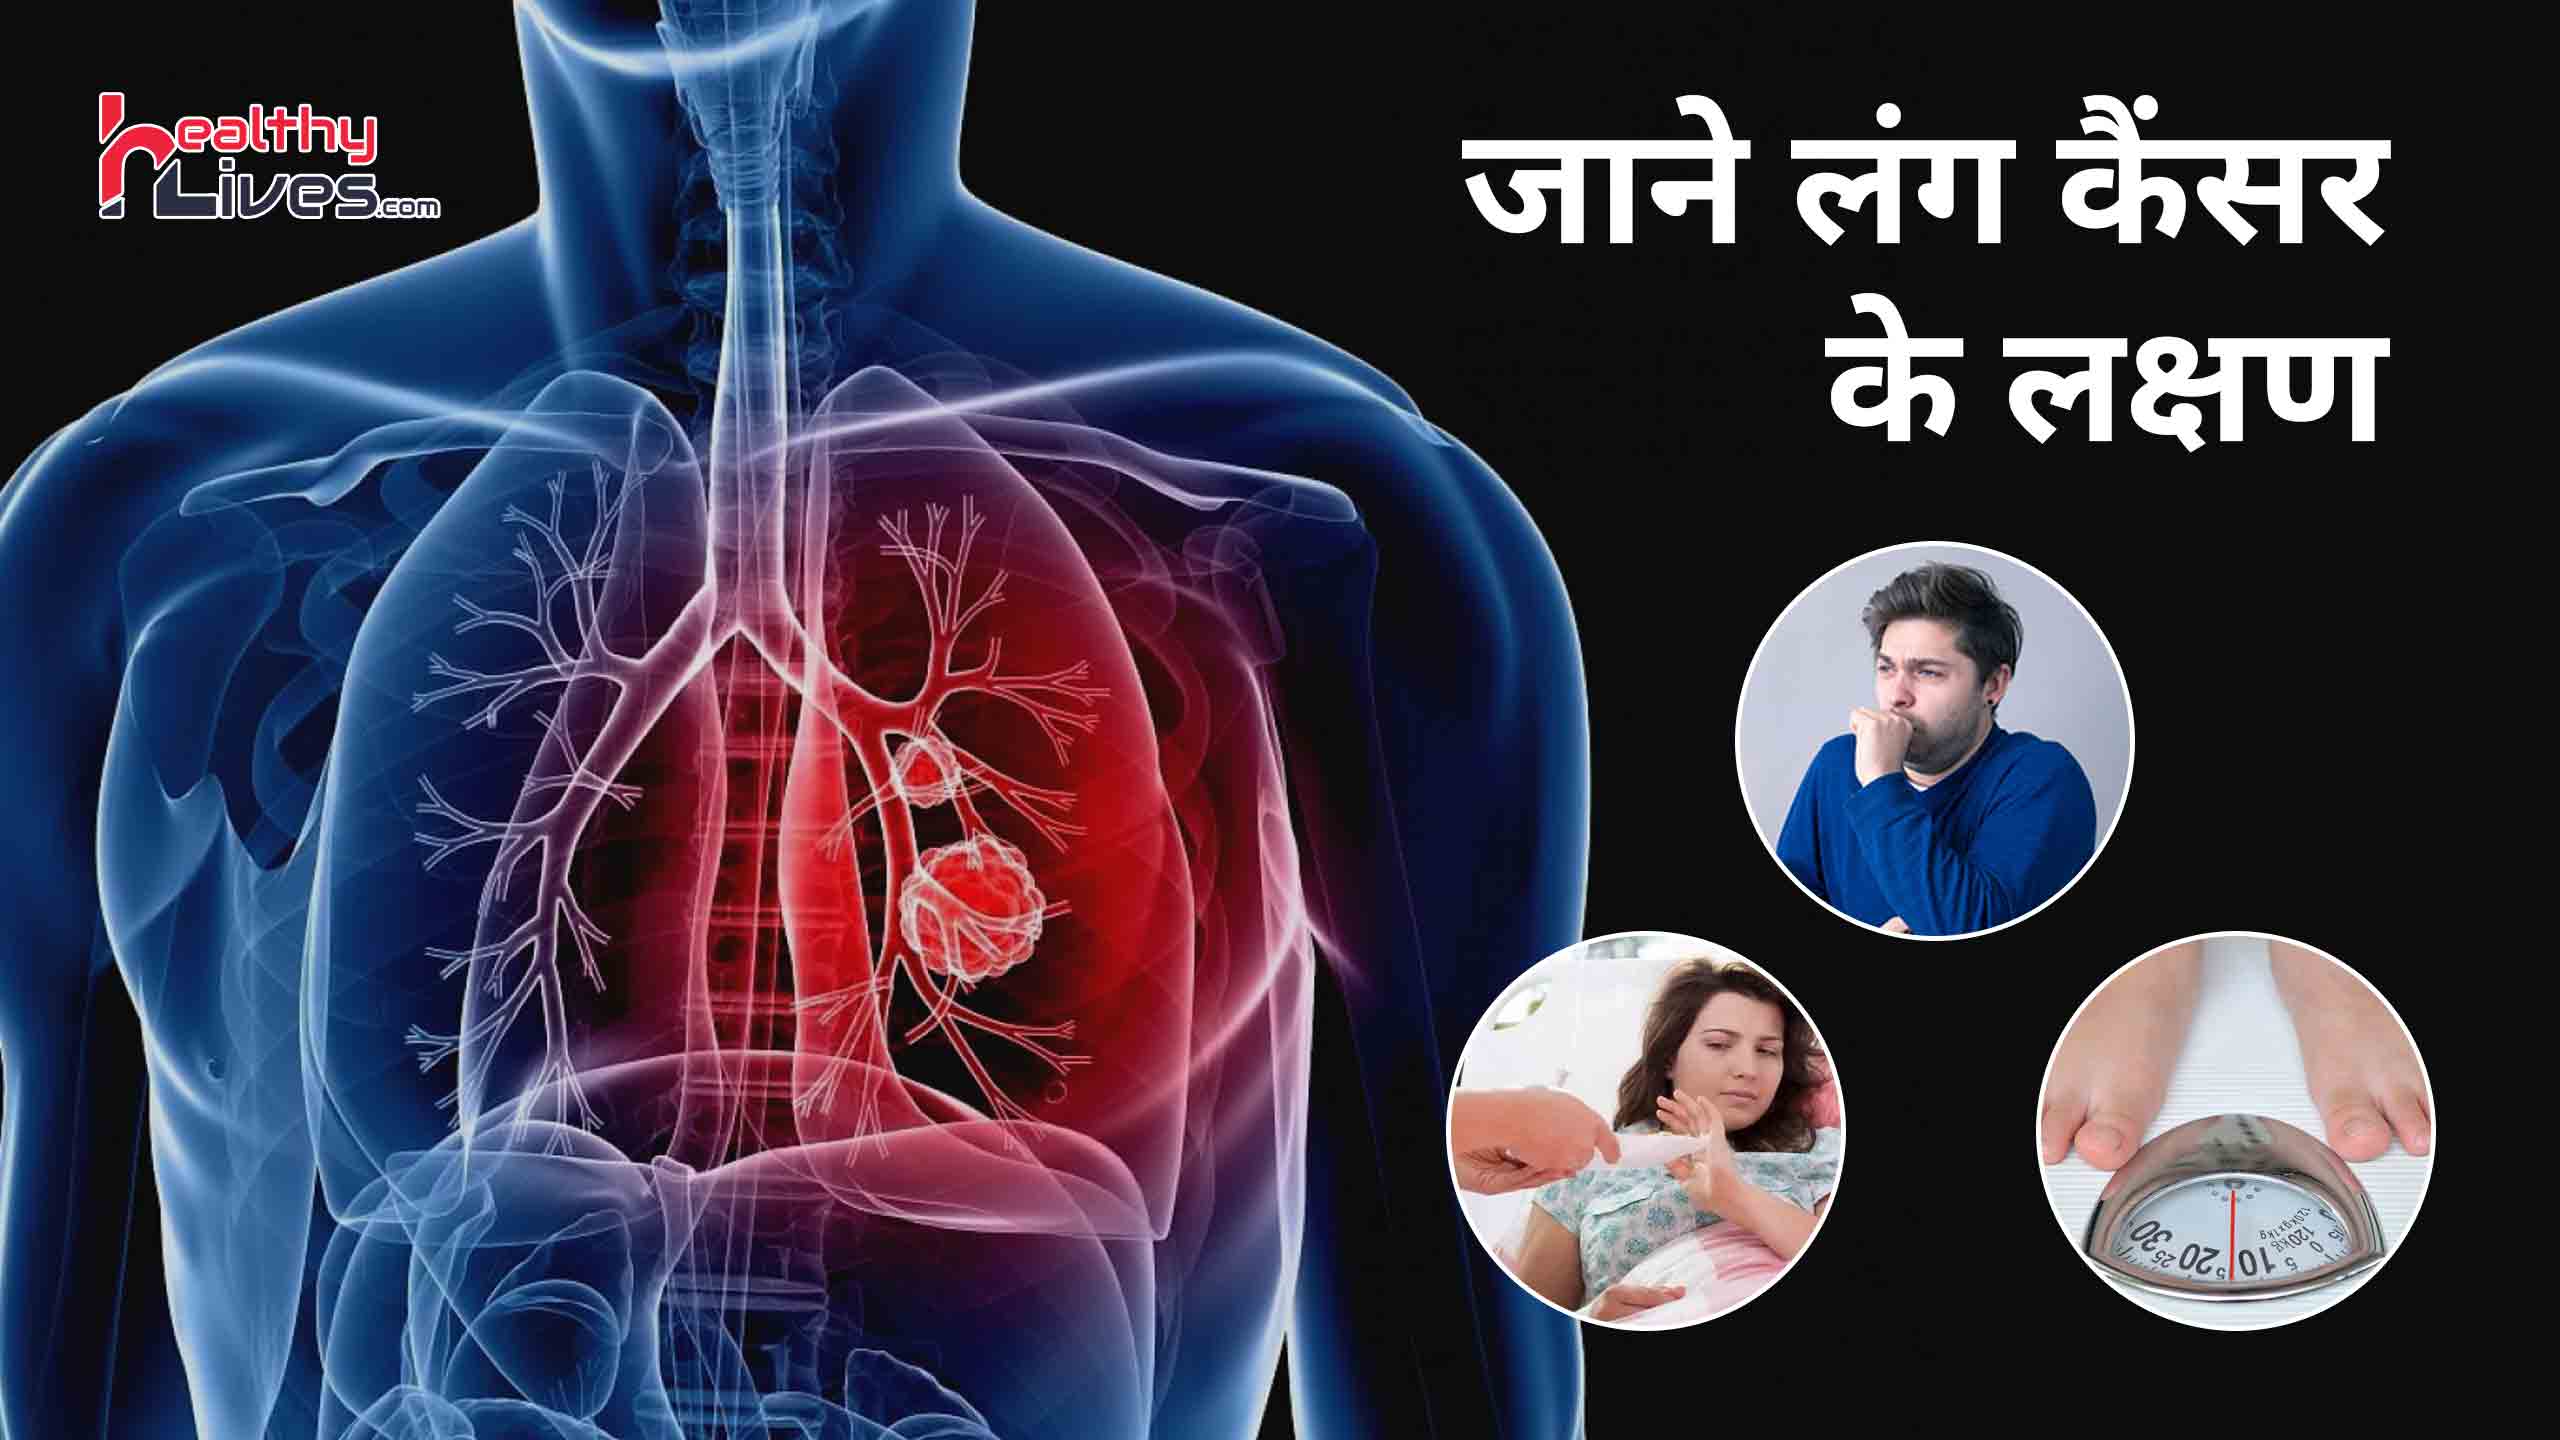 Lung Cancer Symptoms in Hindi: शुरूआती लक्षणों से पहचाने फेफड़े का कैंसर